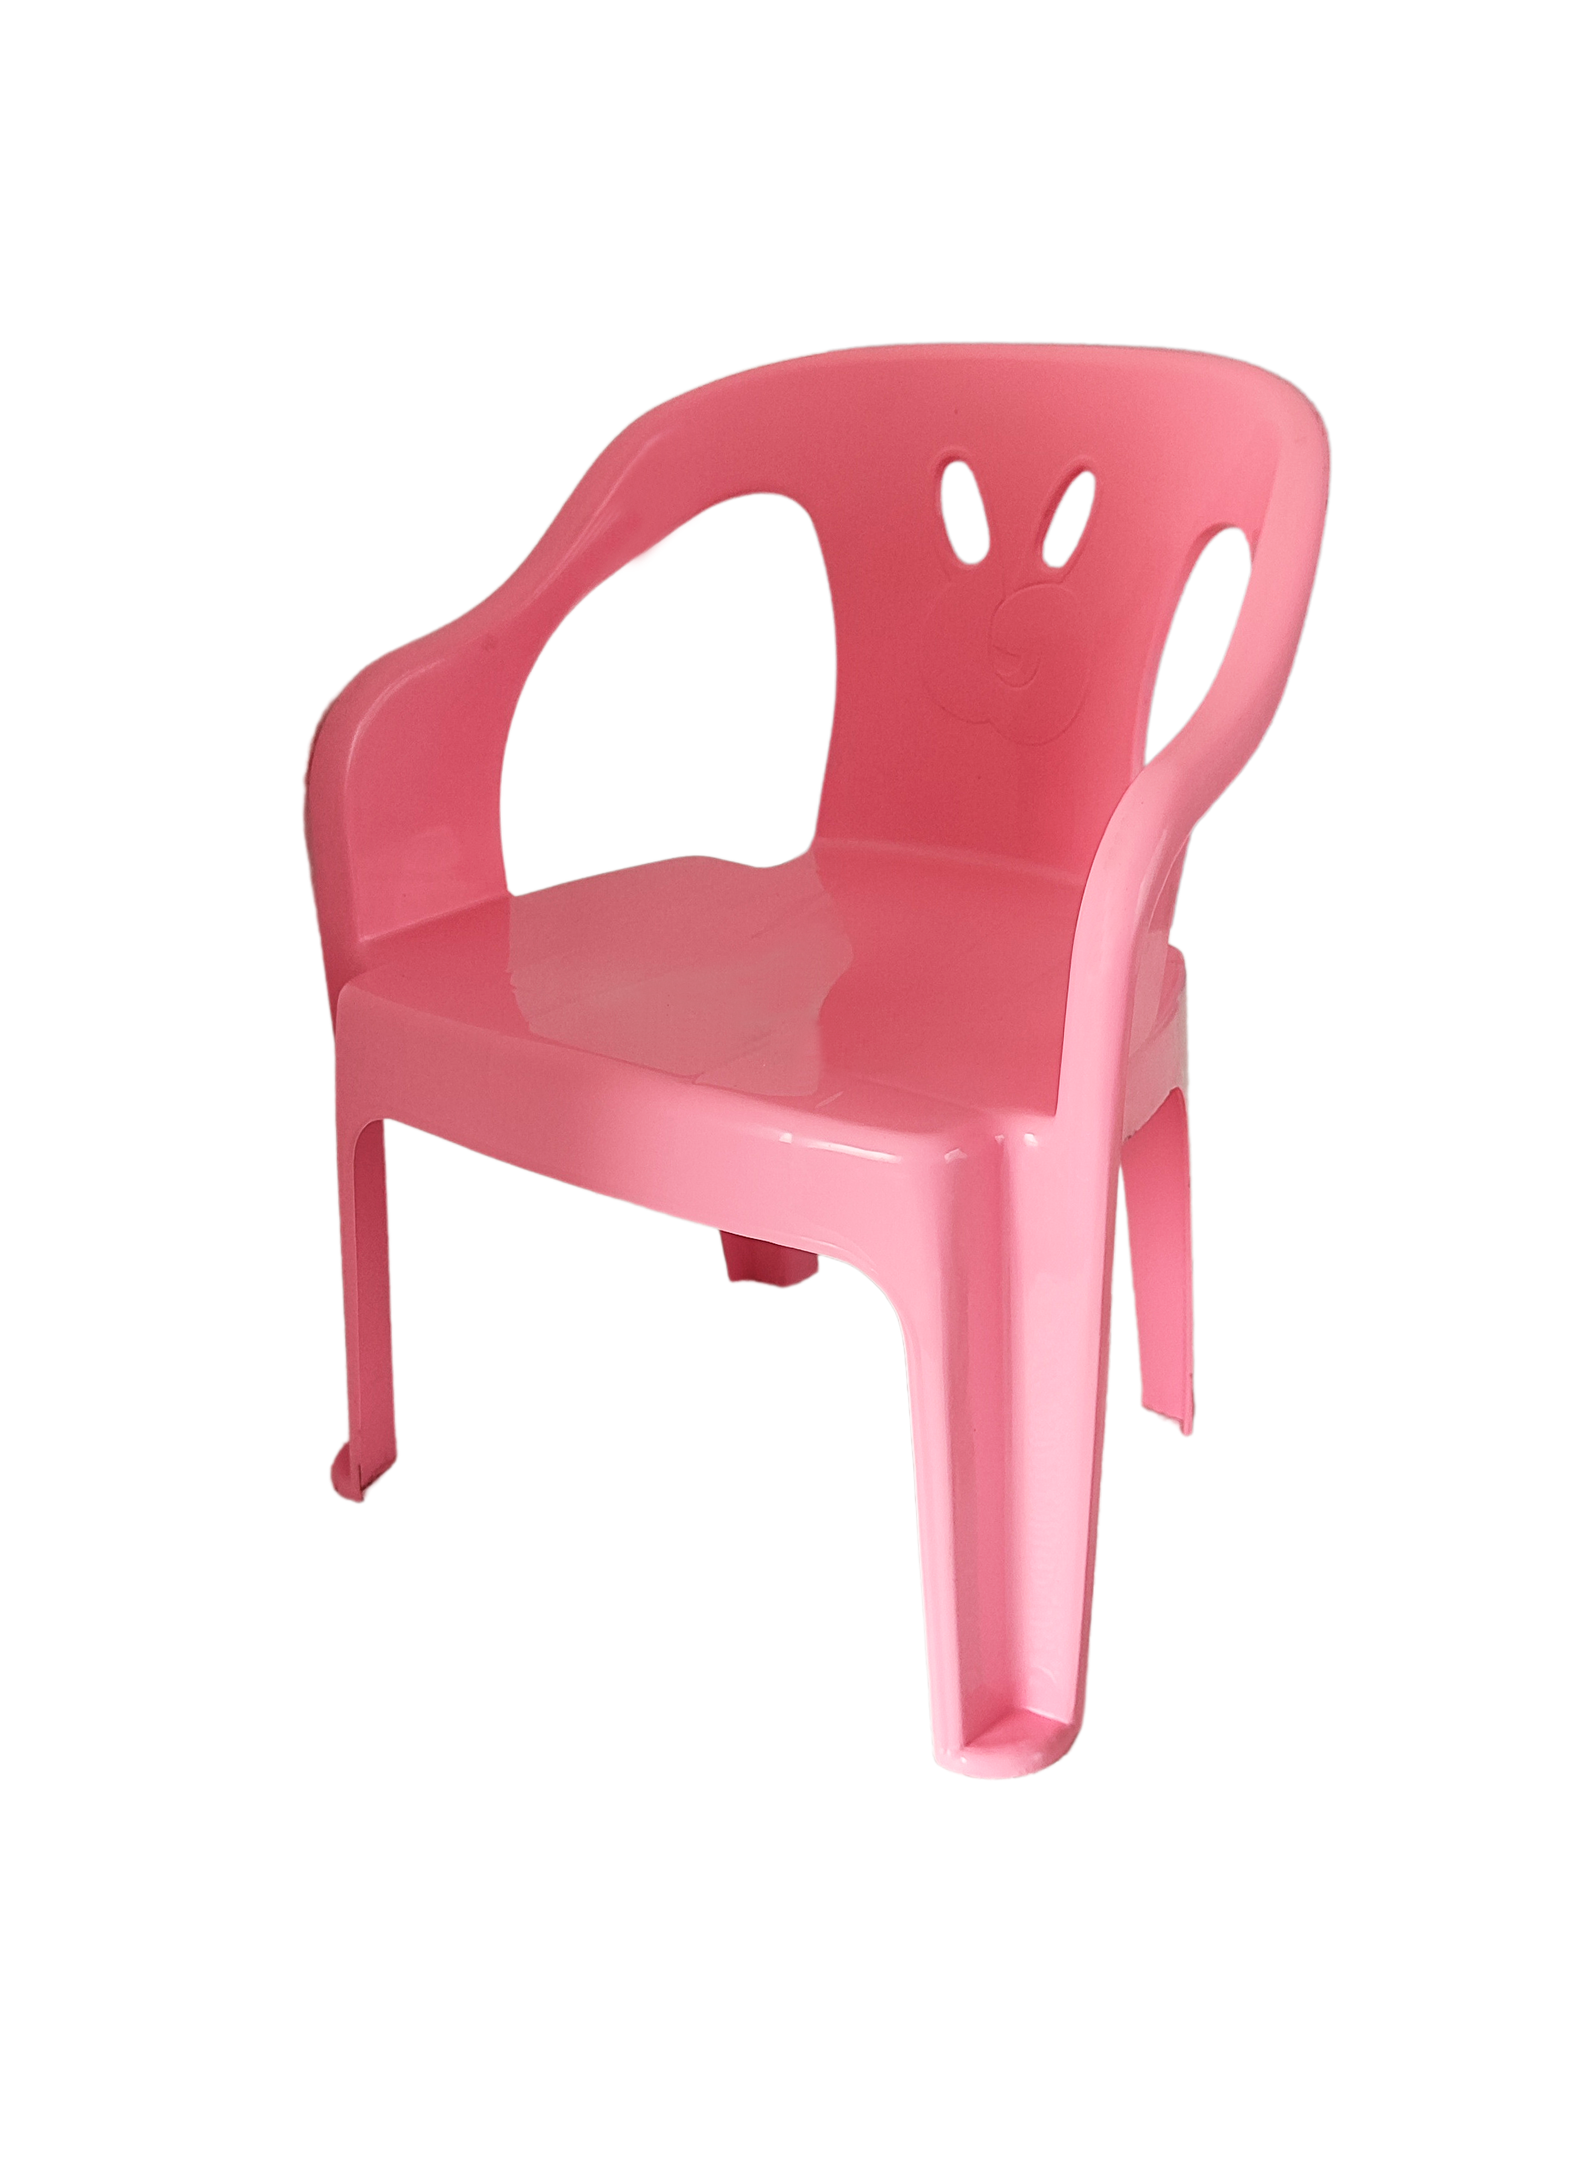 2 Cadeiras Mini Poltrona Infantil de Plástico Rosa e Azul - 3